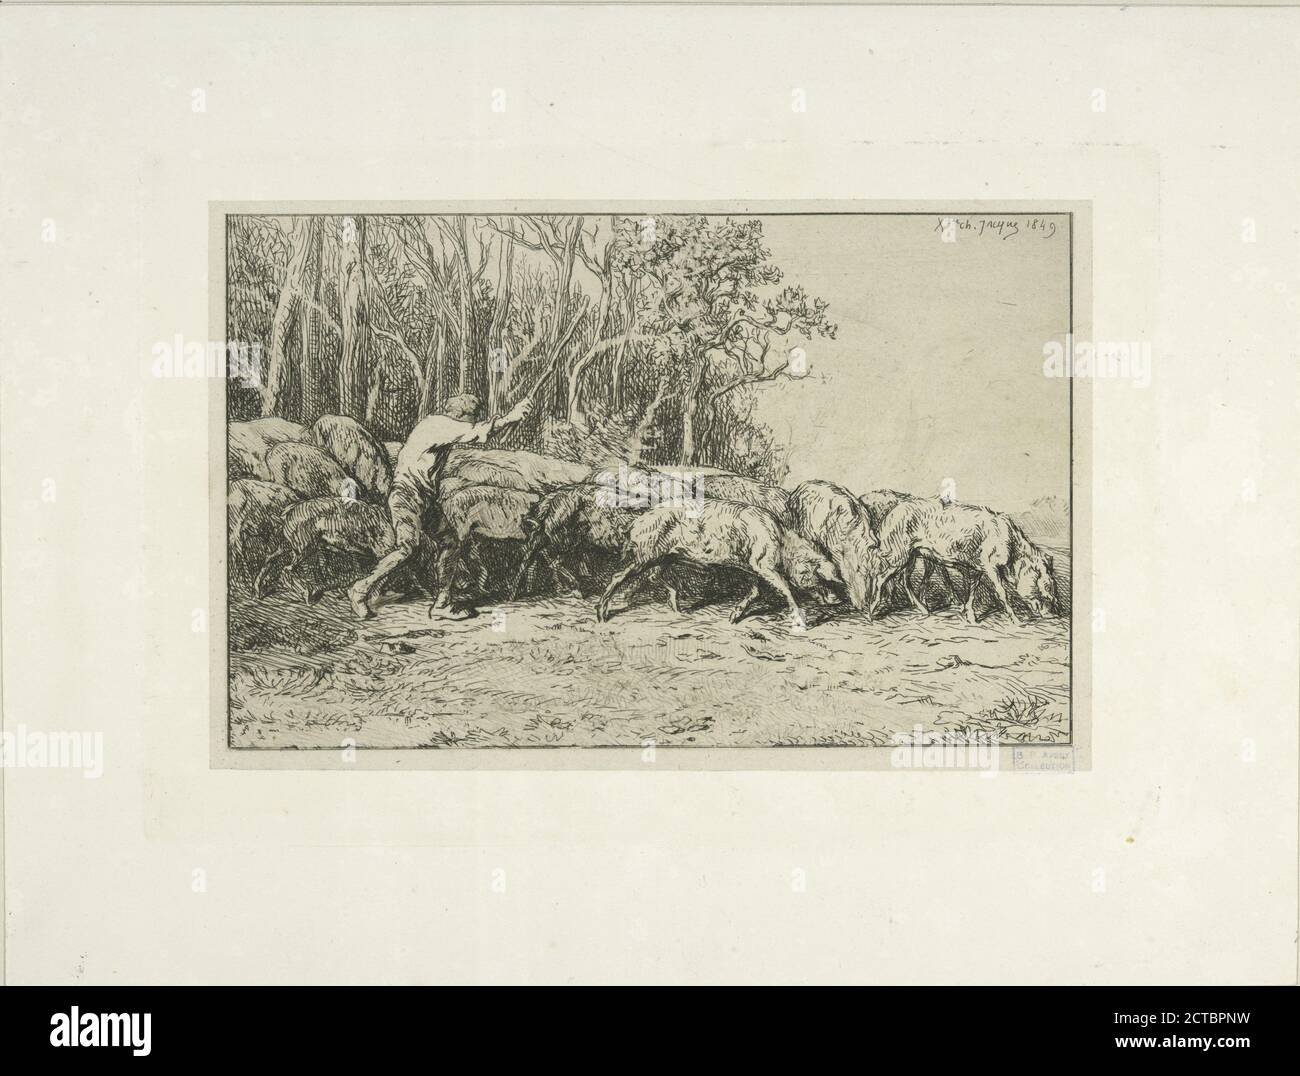 Troupeau de porcs sortant d'un bois., still image, Prints, 1849 Stock Photo